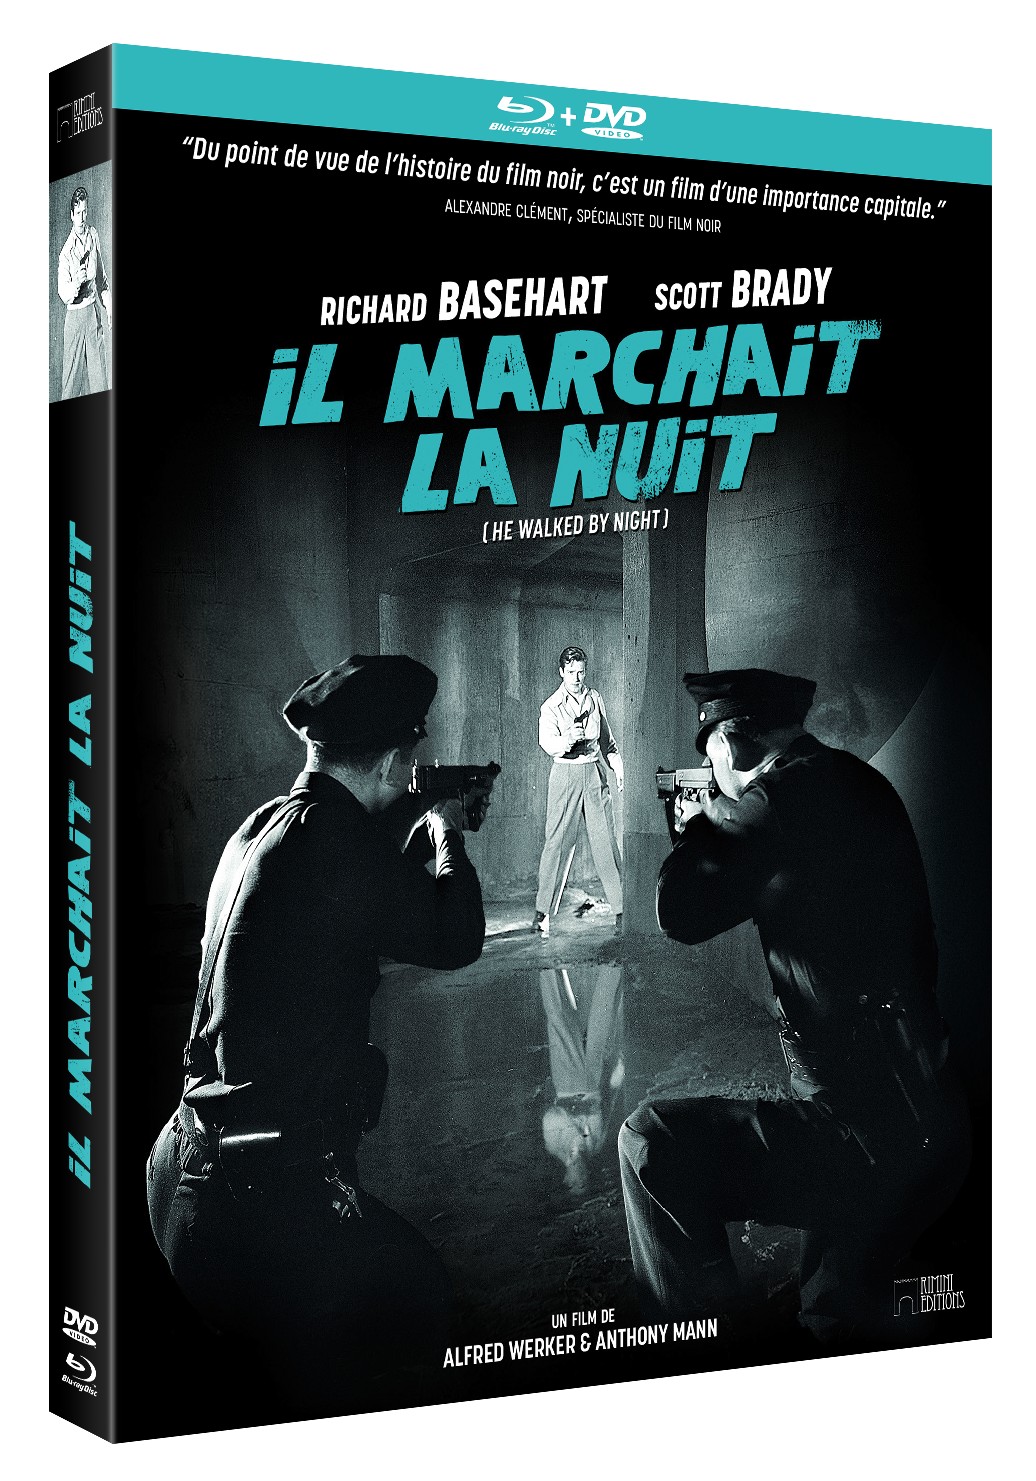 IL MARCHAIT LA NUIT - COMBO DVD + BLU-RAY - ÉDITION LIMITÉE